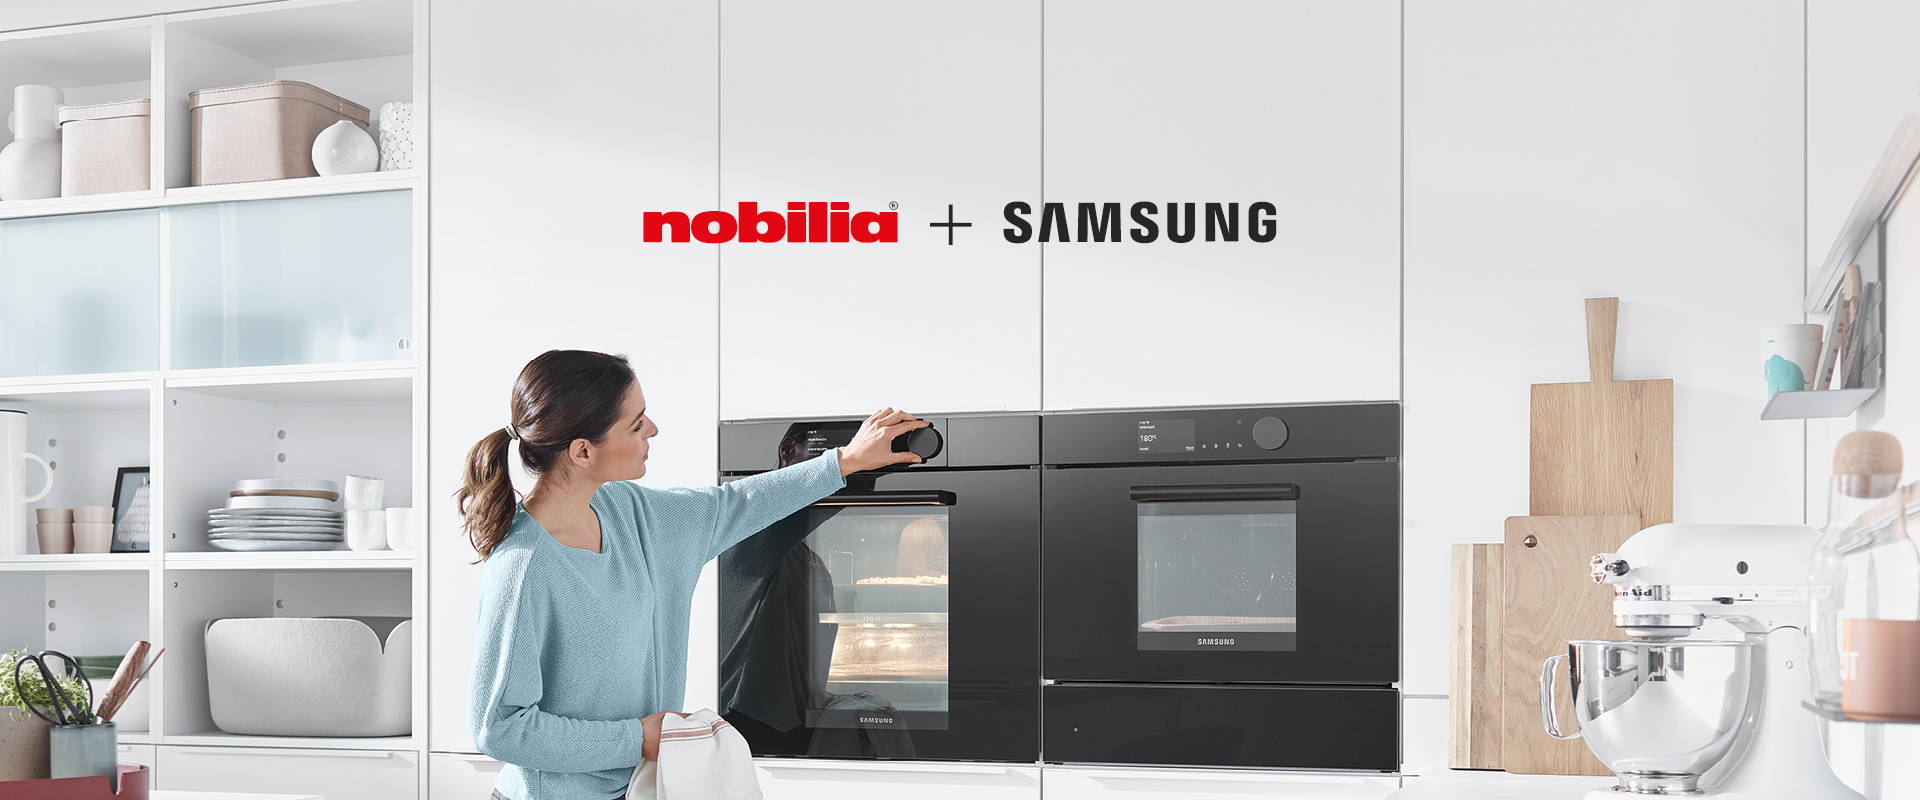 Moderne Kücheneinstellung, die eine Frau zeigt, die mit einem hochmodernen Samsung-Ofen interagiert, der in elegante, weiße Nobilia-Schränke eingebaut ist.